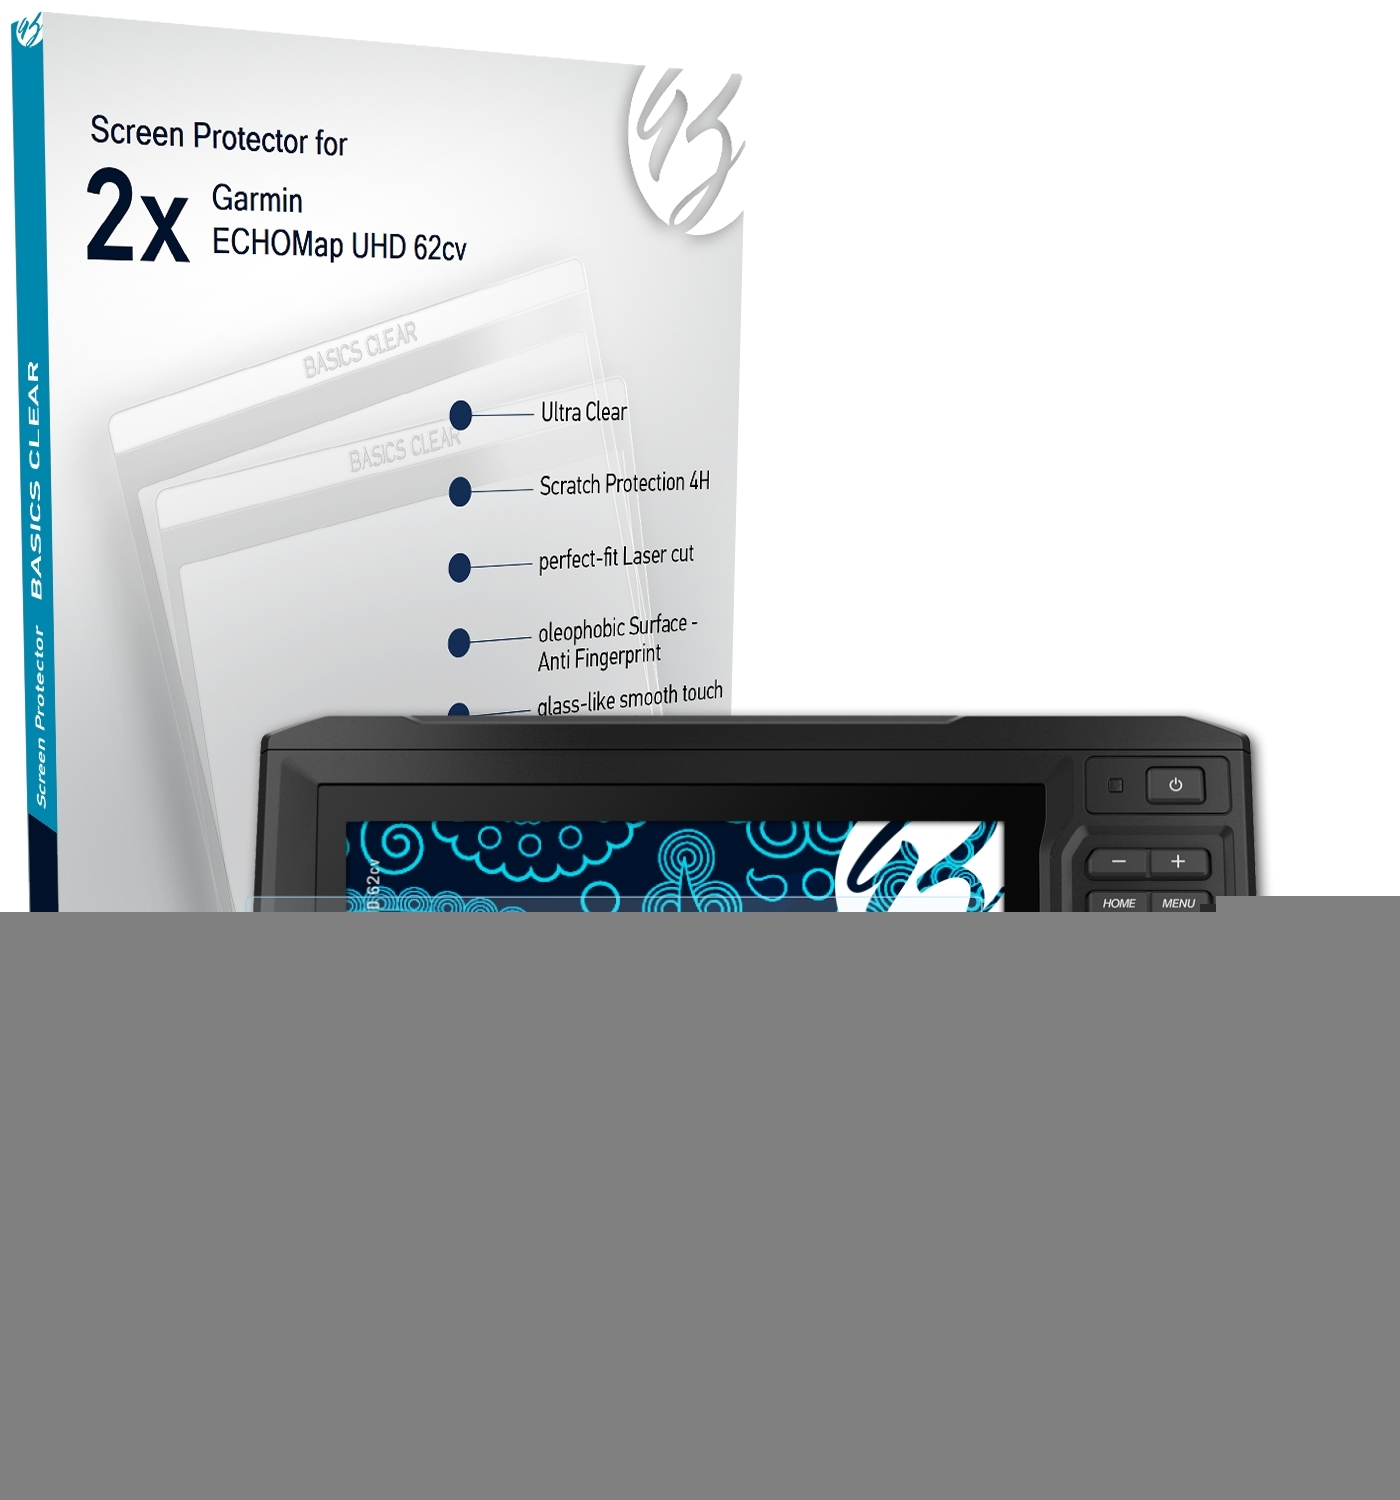 62cv) Garmin UHD 2x Basics-Clear BRUNI Schutzfolie(für ECHOMap